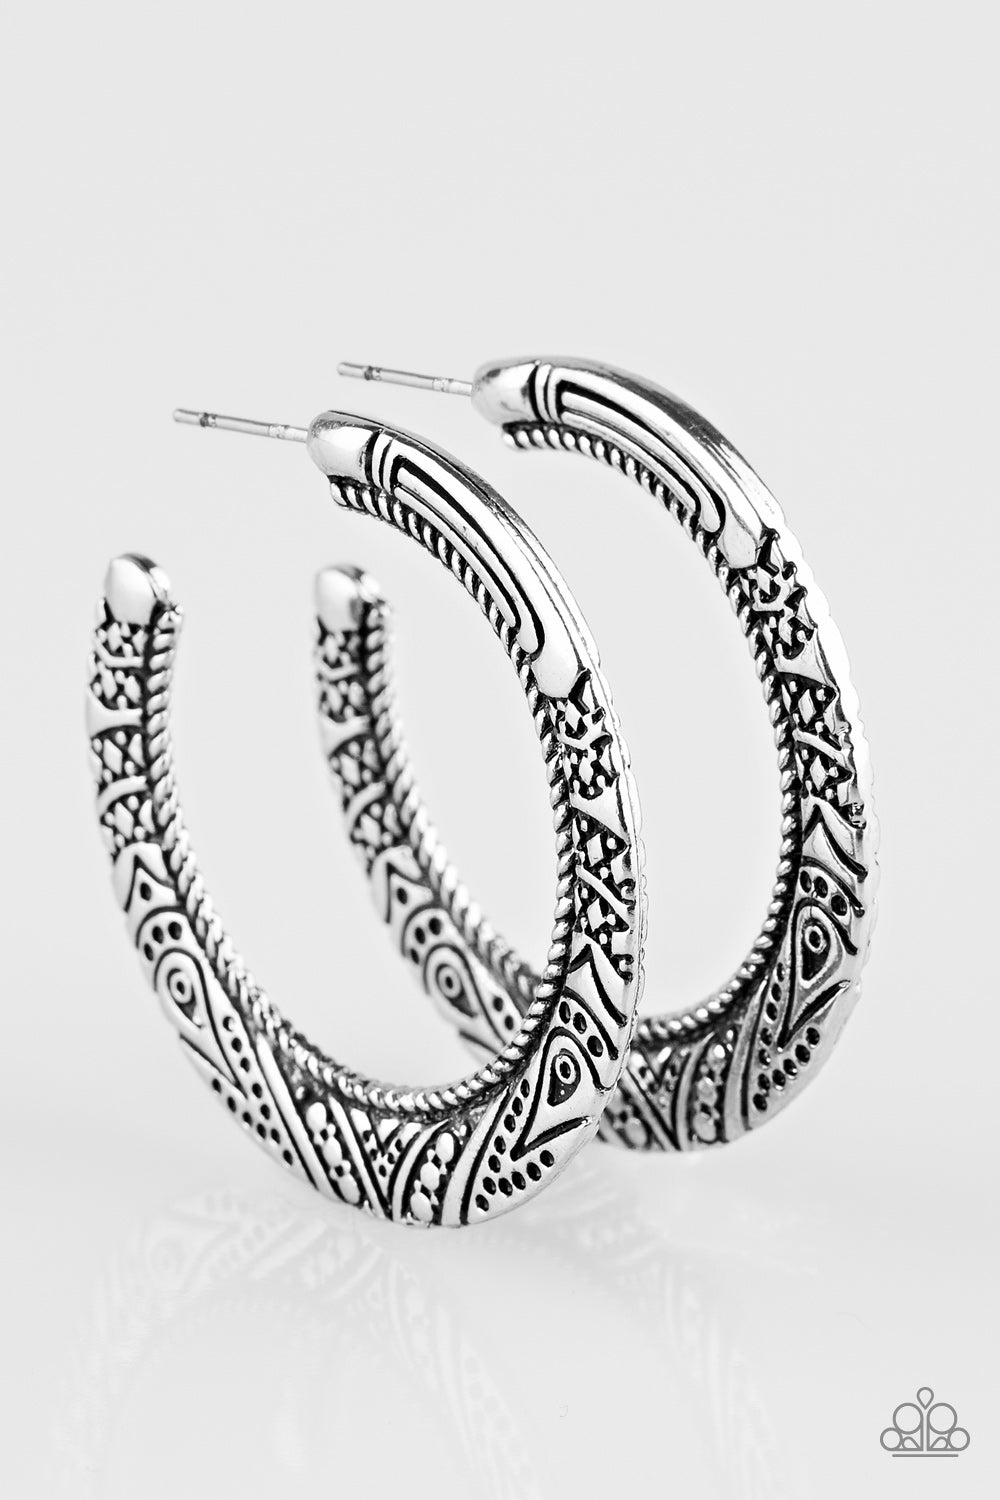 New Zealand Native Silver Hoop-Earrings